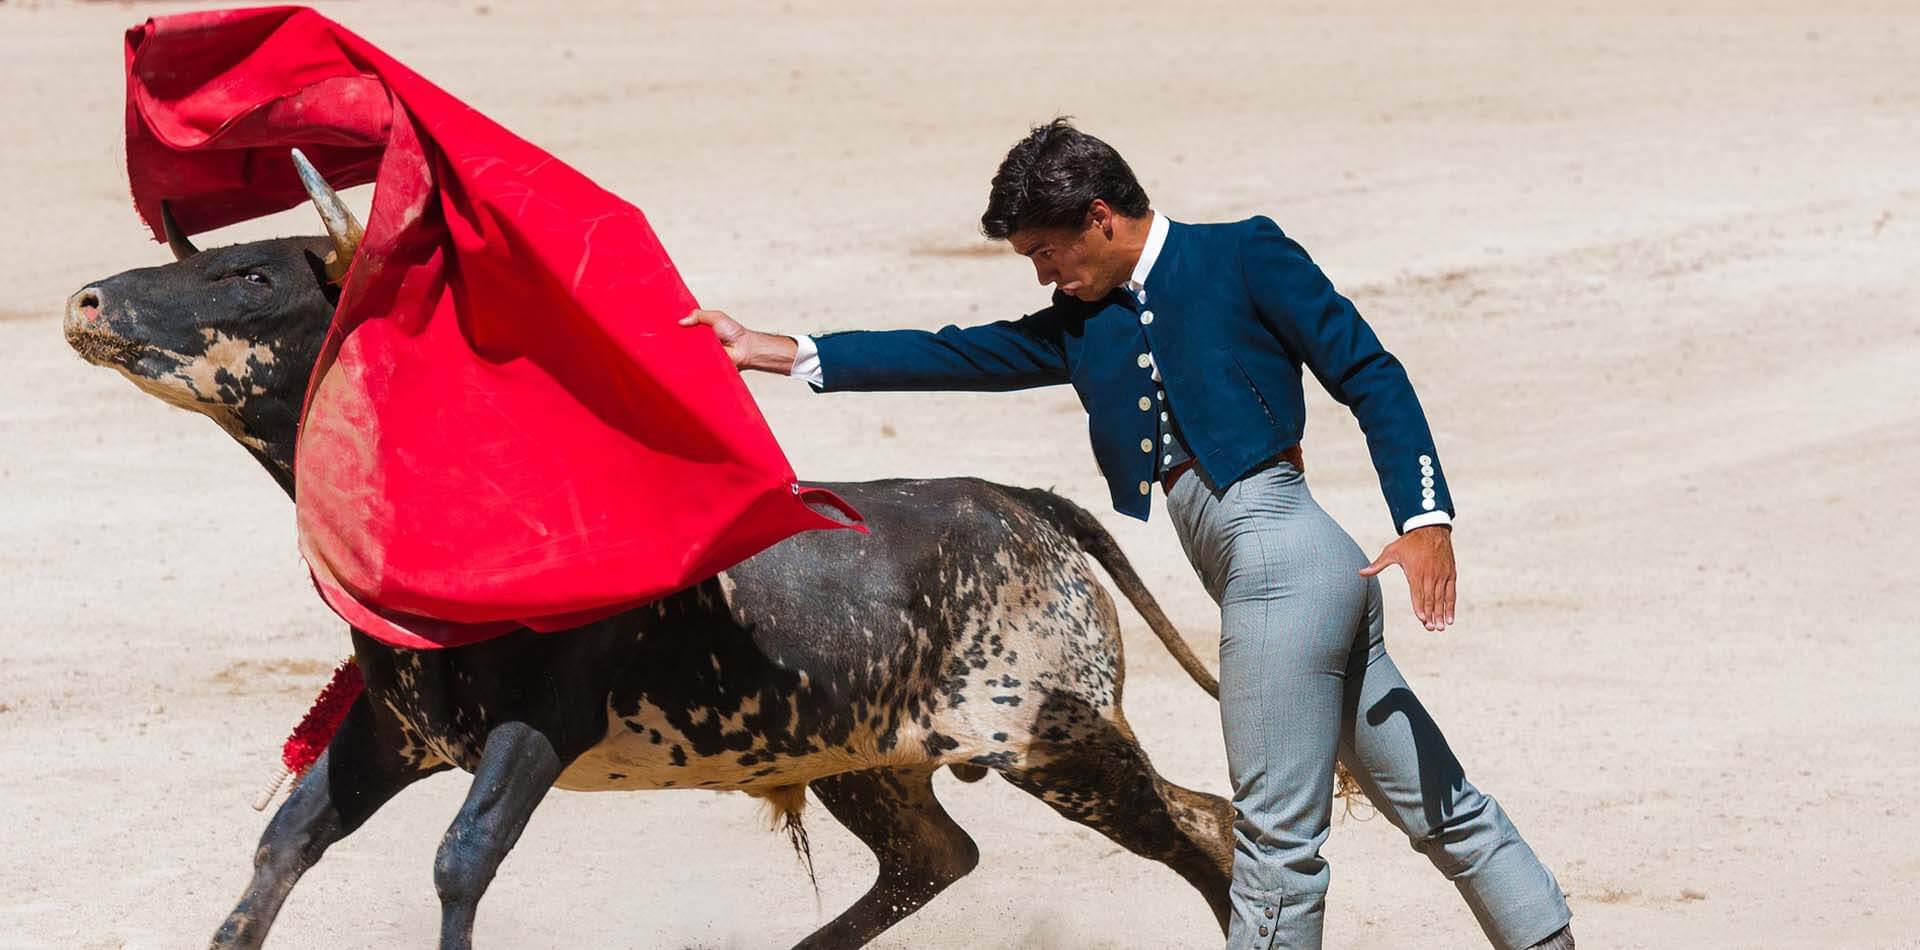 Matador in blauer Weste wirft ein rotes Tuch auf einen Stier.